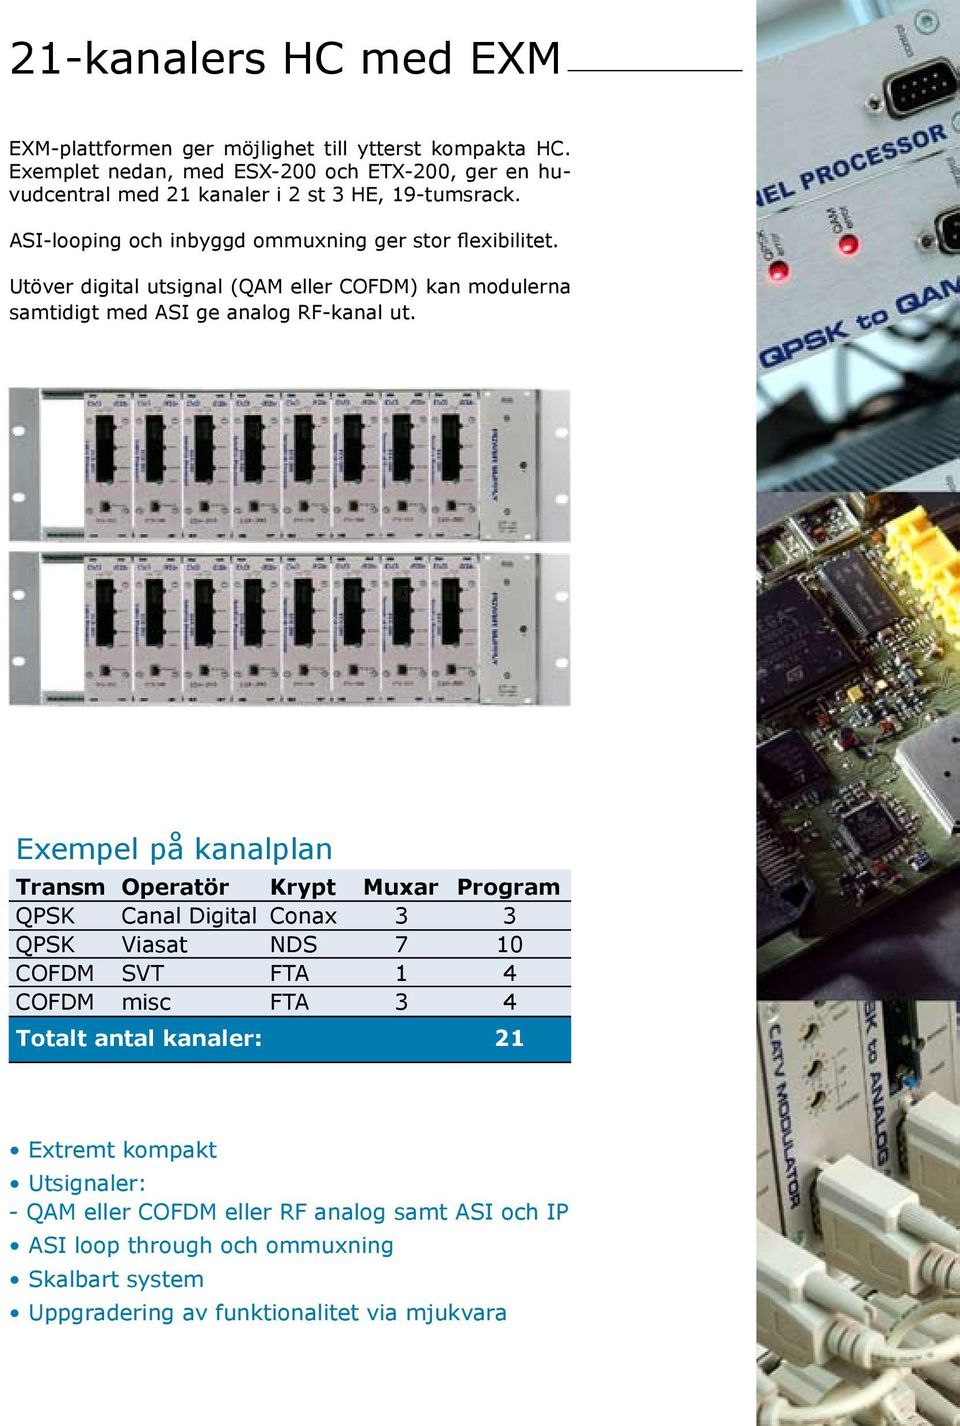 Utöver digital utsignal (QAM eller COFDM) kan modulerna samtidigt med ASI ge analog RF-kanal ut.